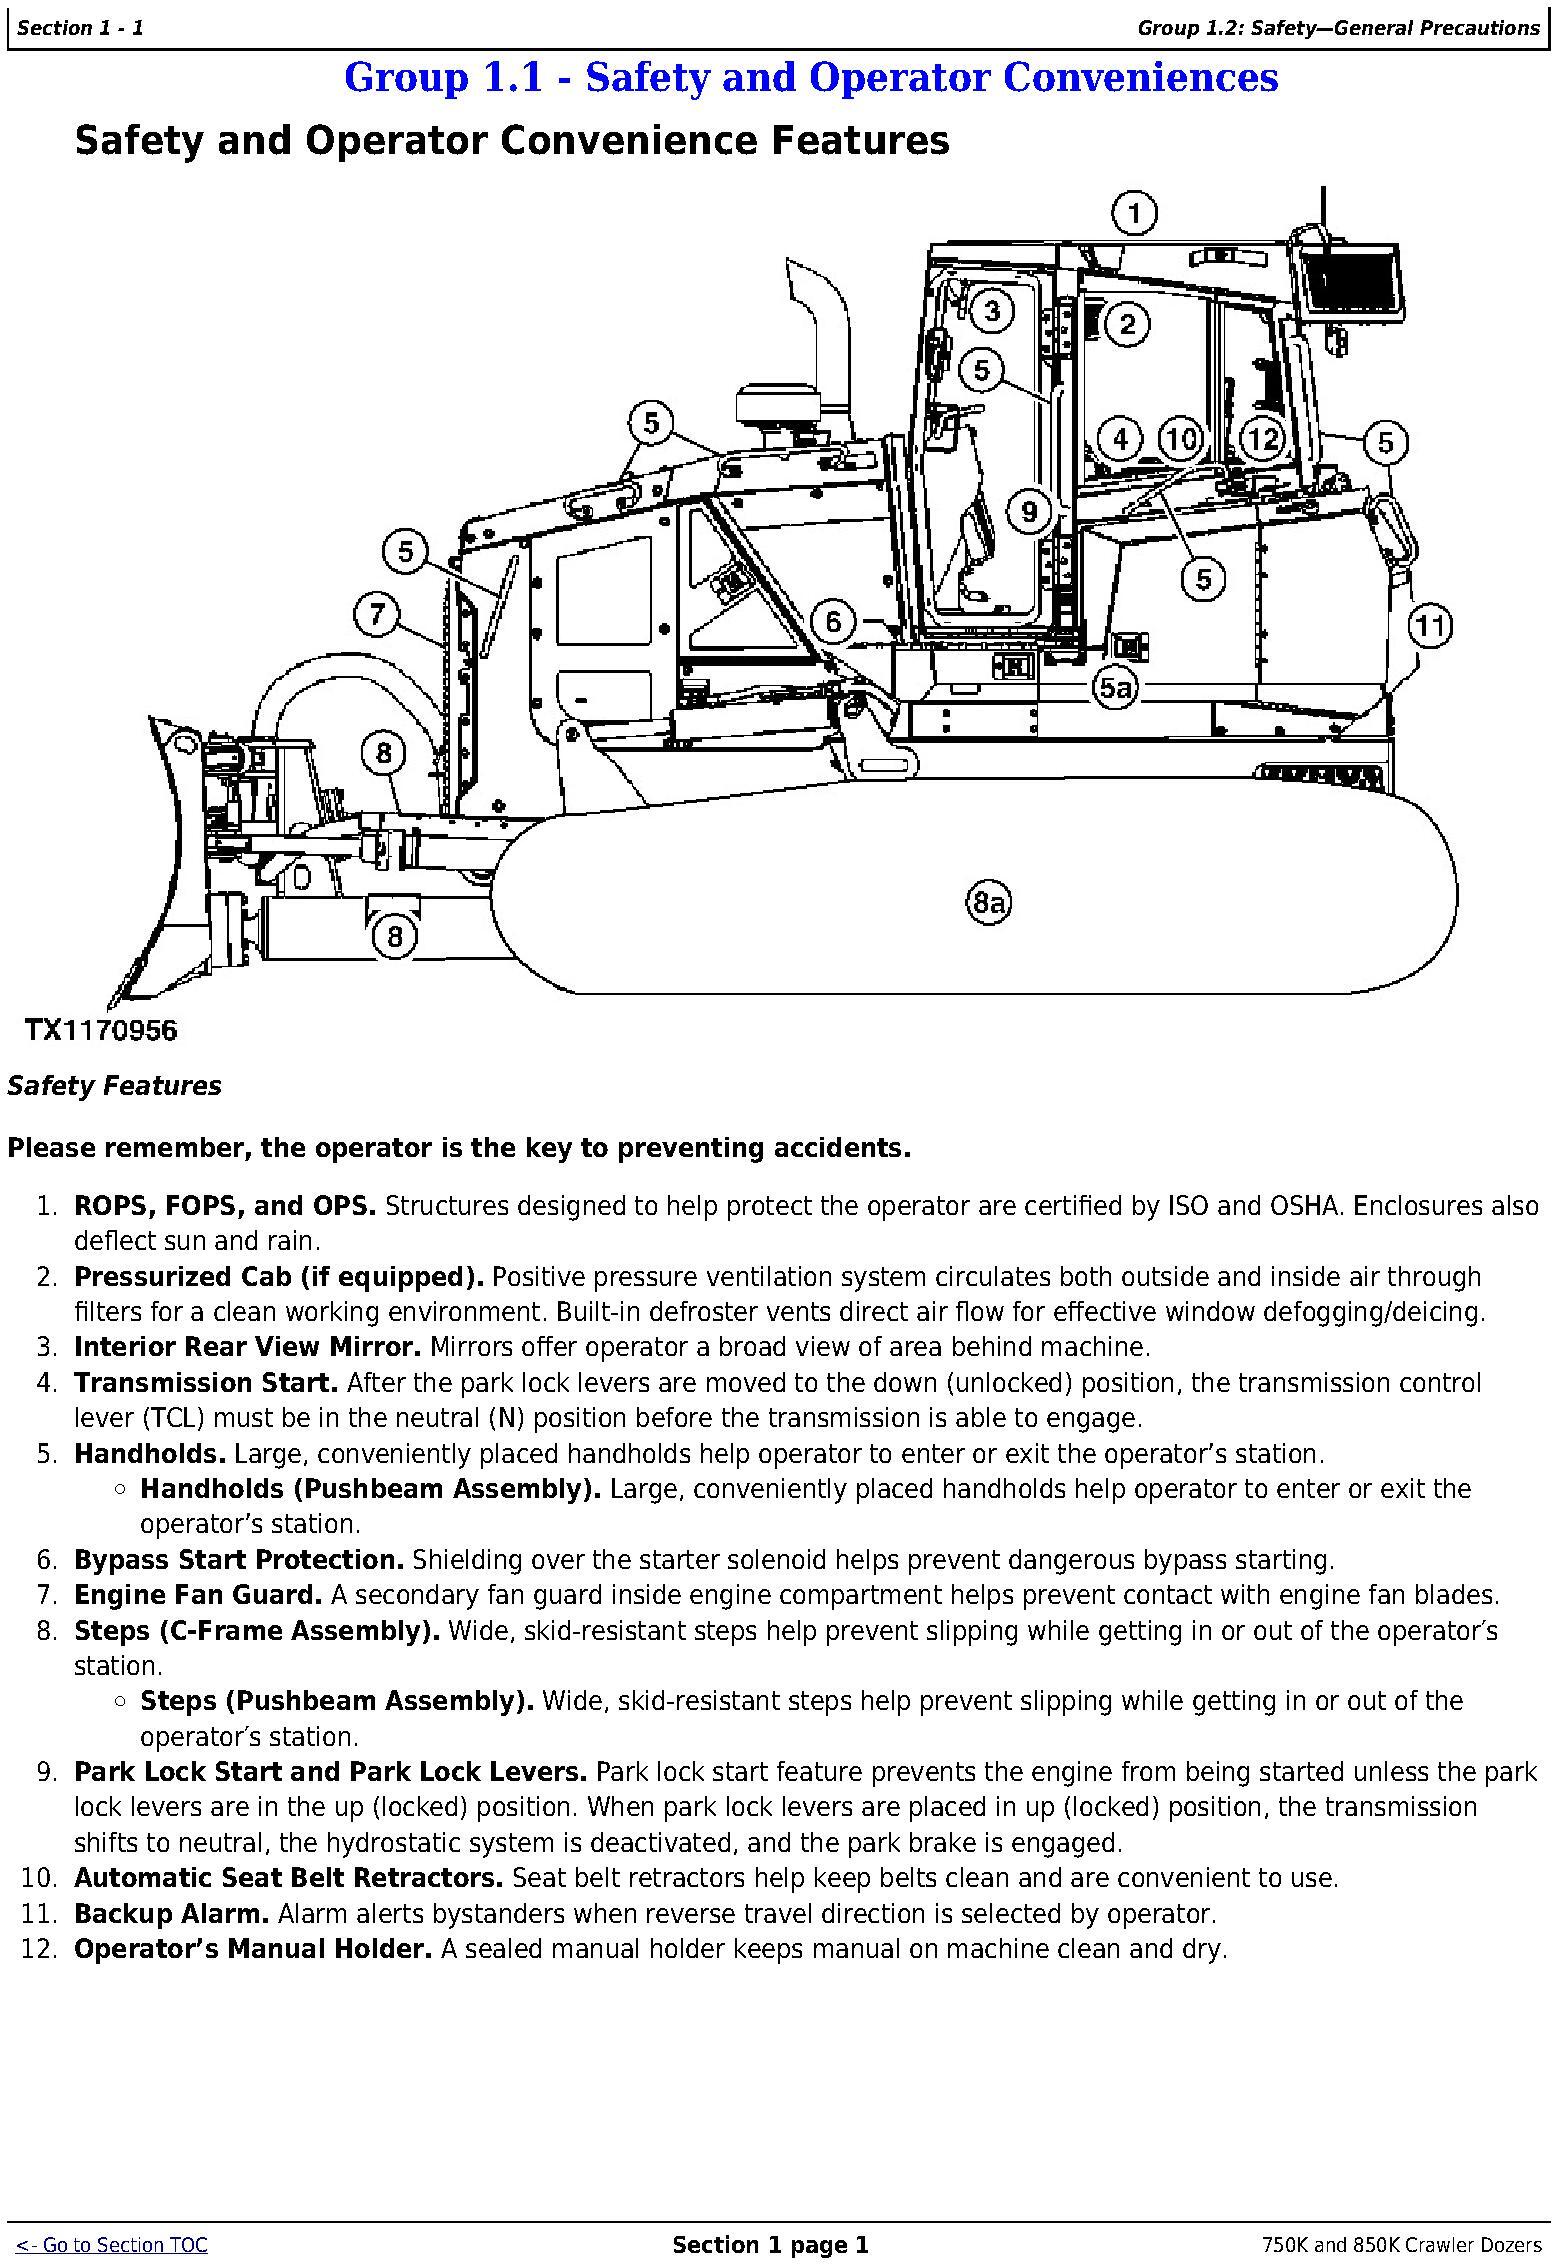 OMT355293X19 - John Deere 750K (SN. F271593-), 850K (SN. F271510-) Crawler Dozers Operator's Manual - 1